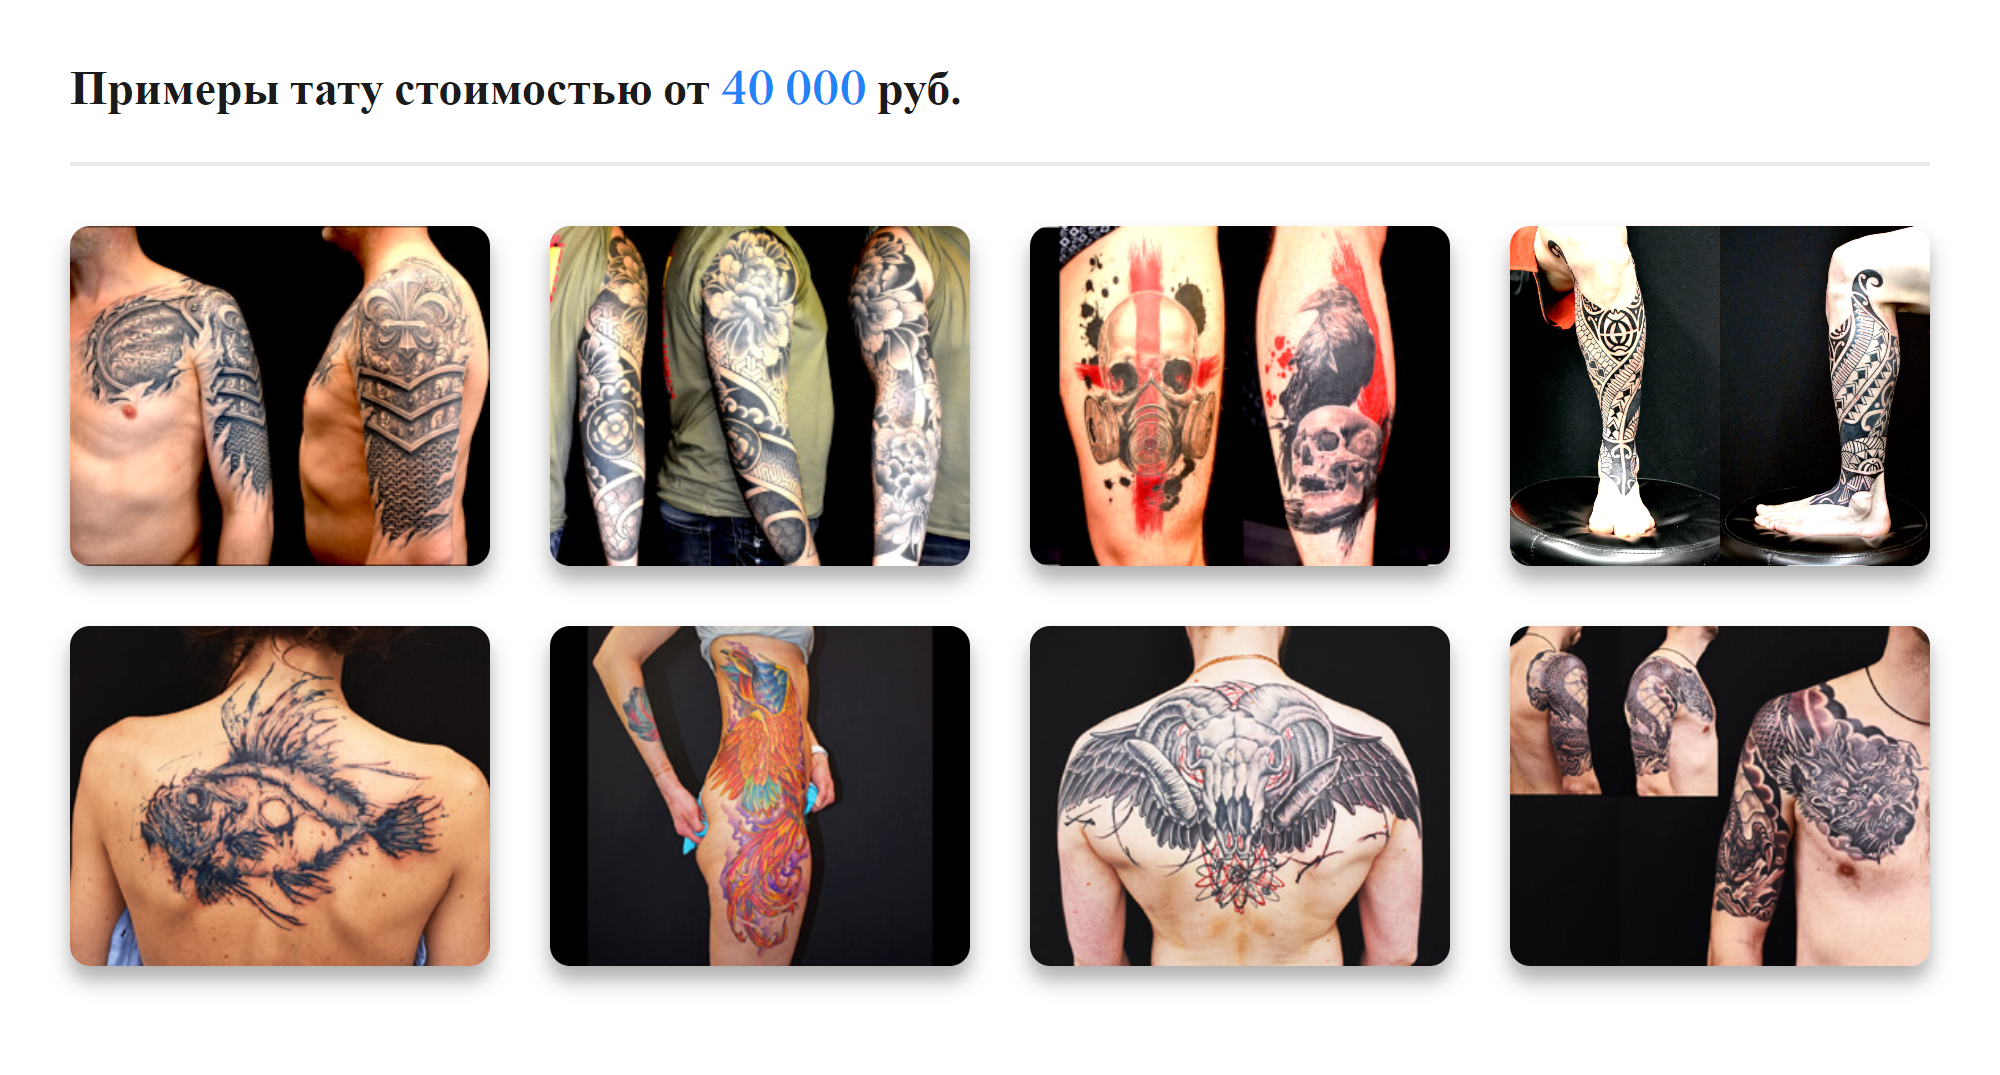 Большие рисунки стоят от 40 000 ₽. Источник: maze.tattoo